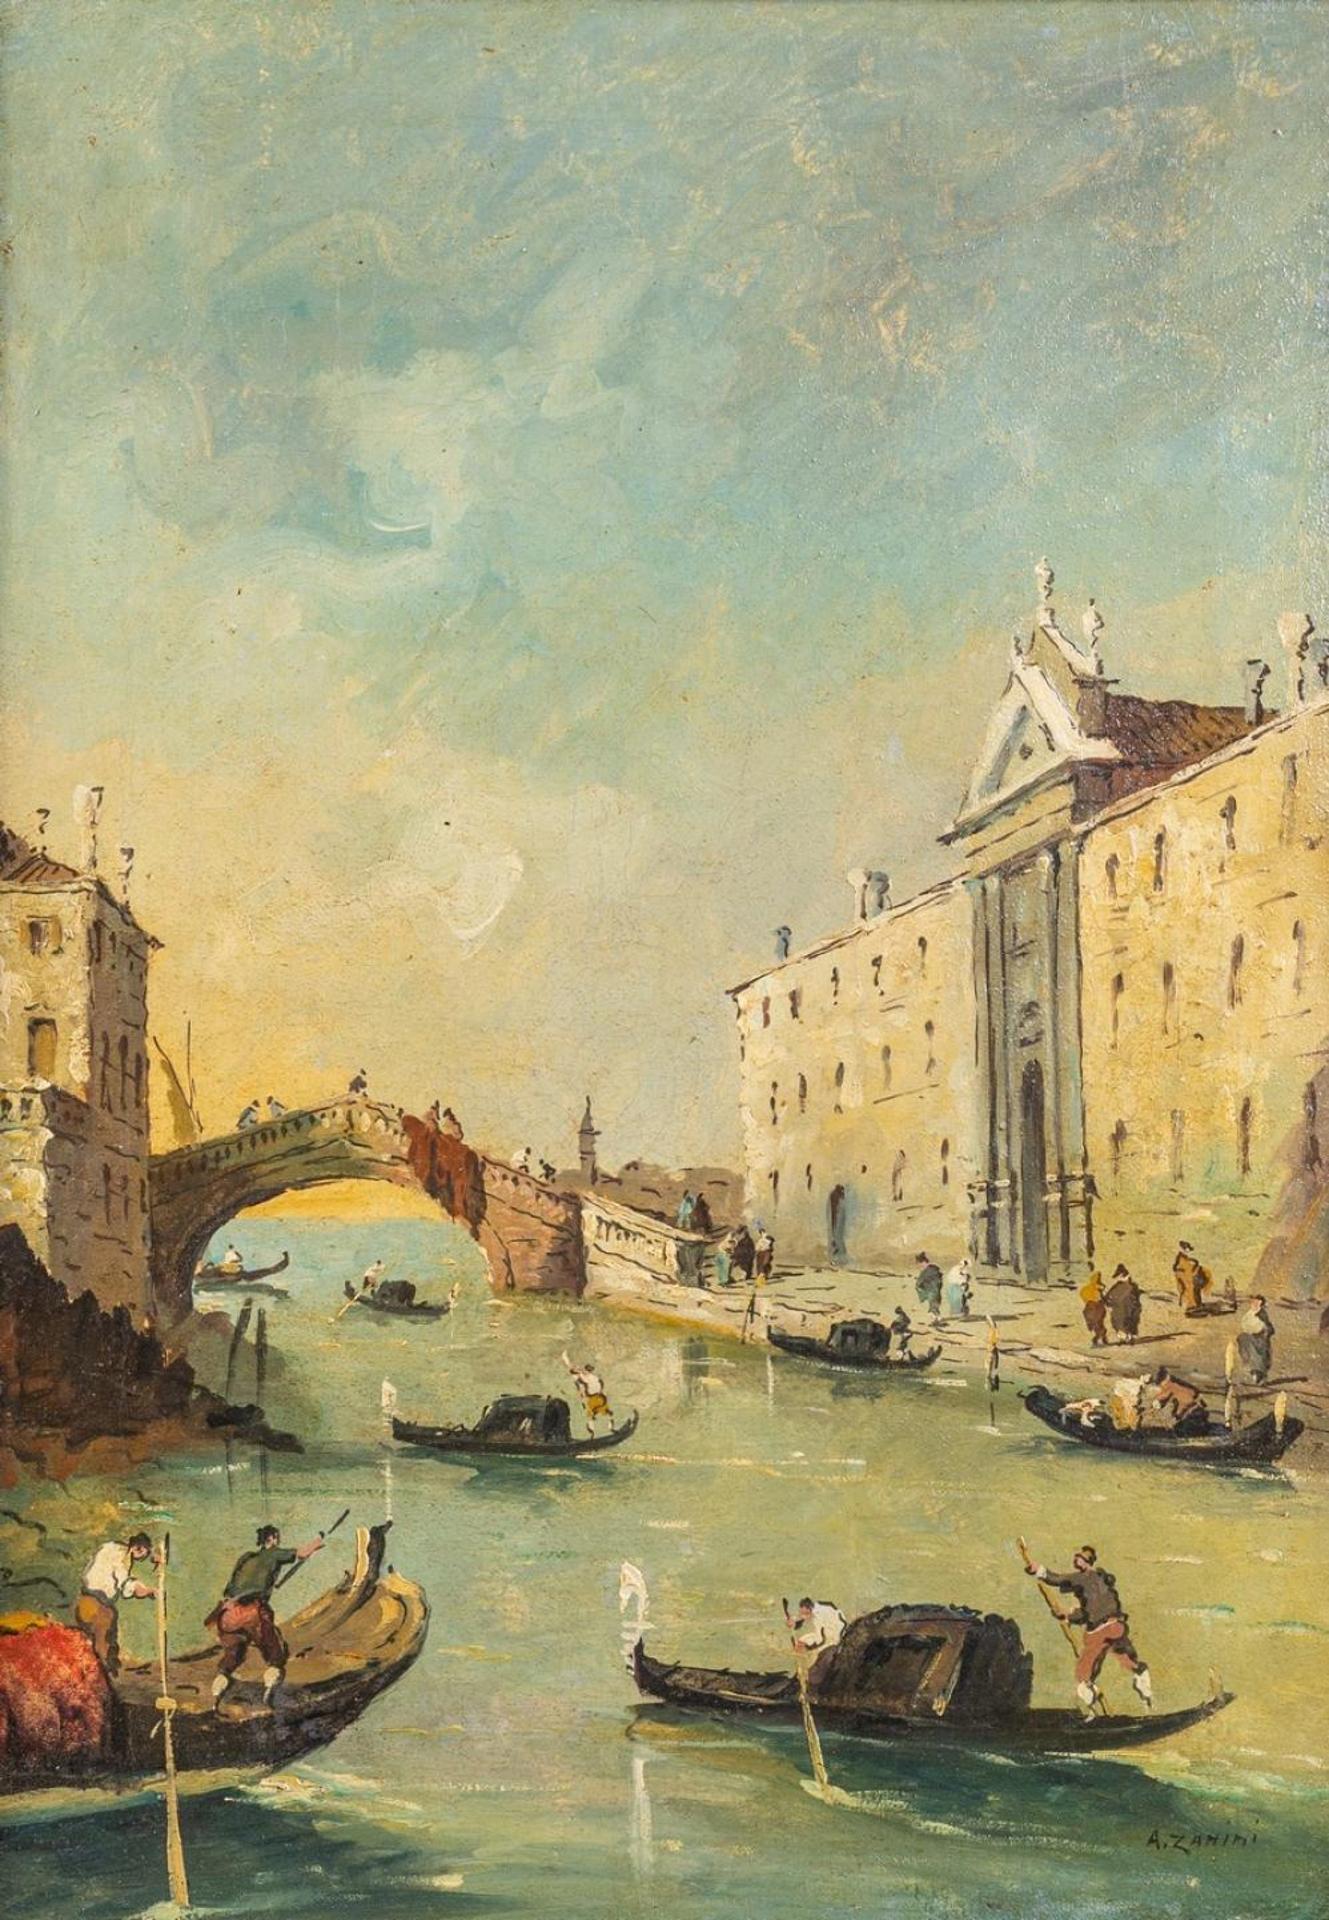 A. Zanini - A Venetian Canal